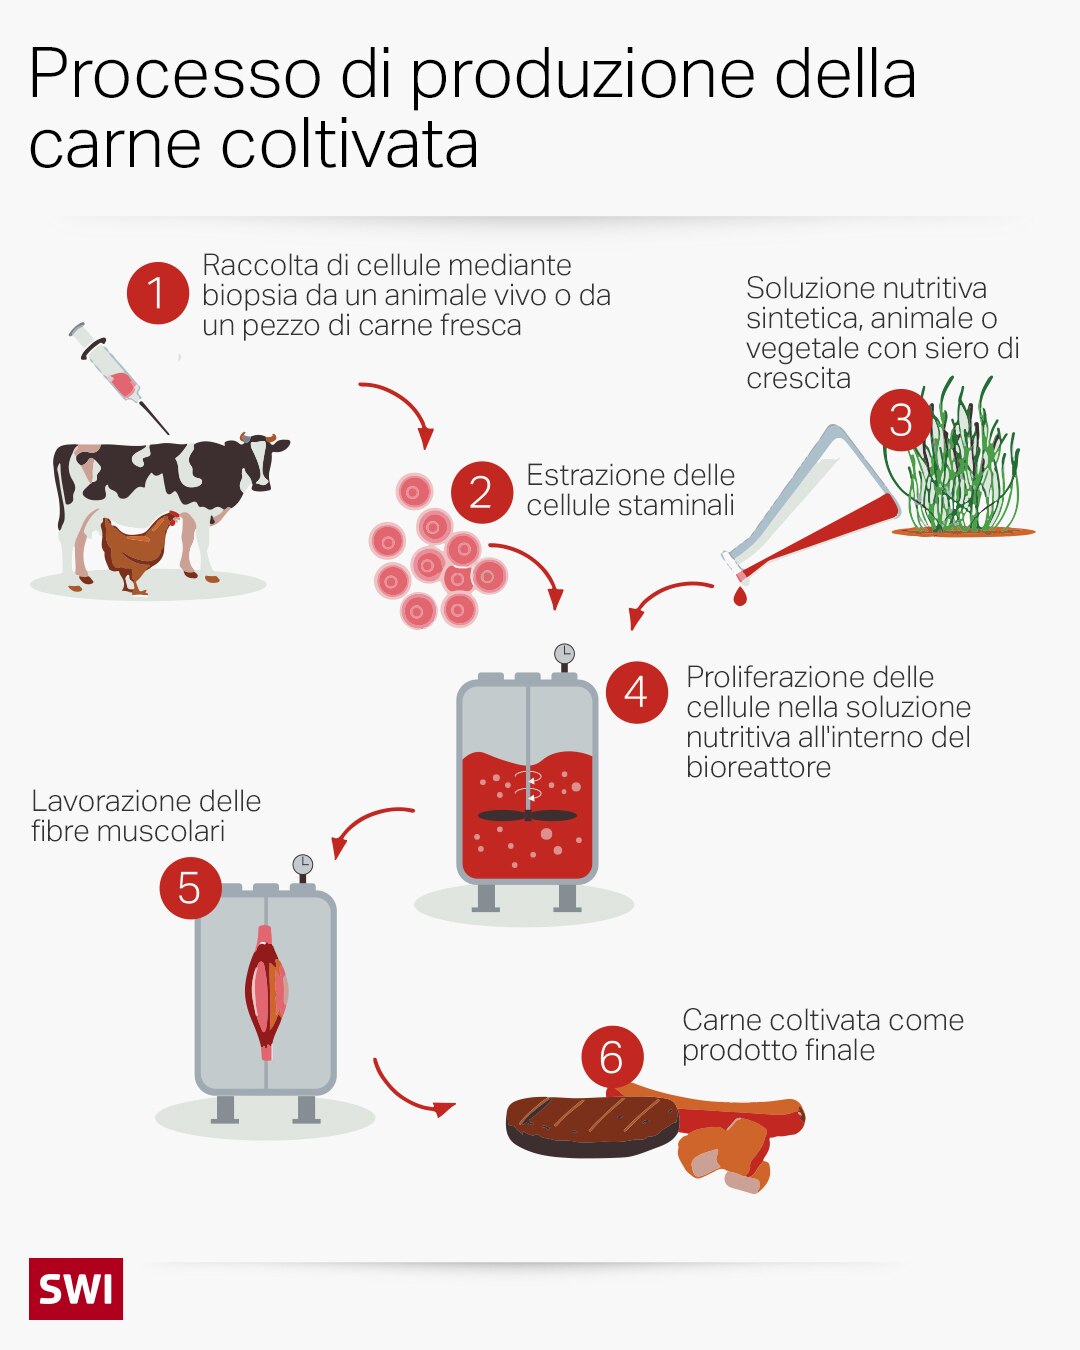 Schema sul processo di produzione della carne coltivata.